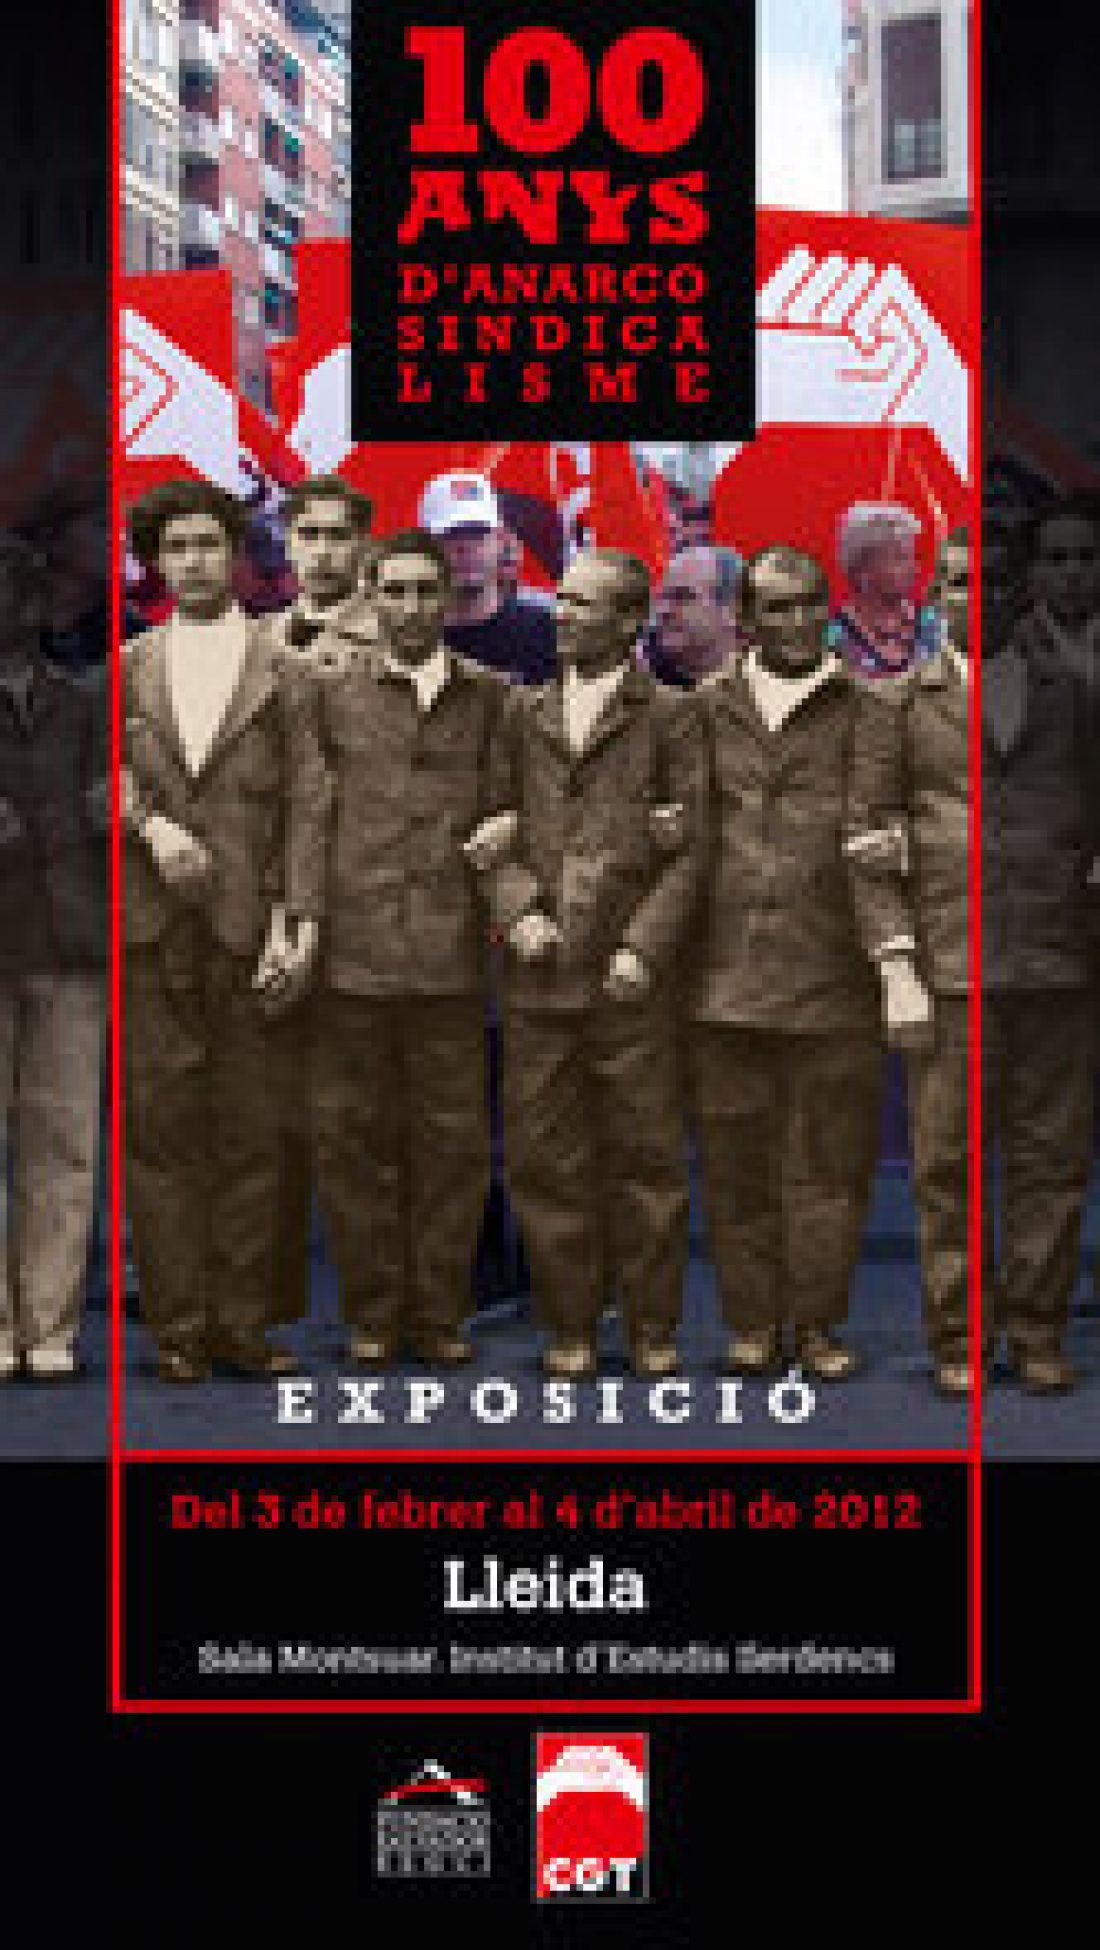 Lleida, del 3 de febrero al 1 de abril : Exposición 100 años de Anarcosindicalismo